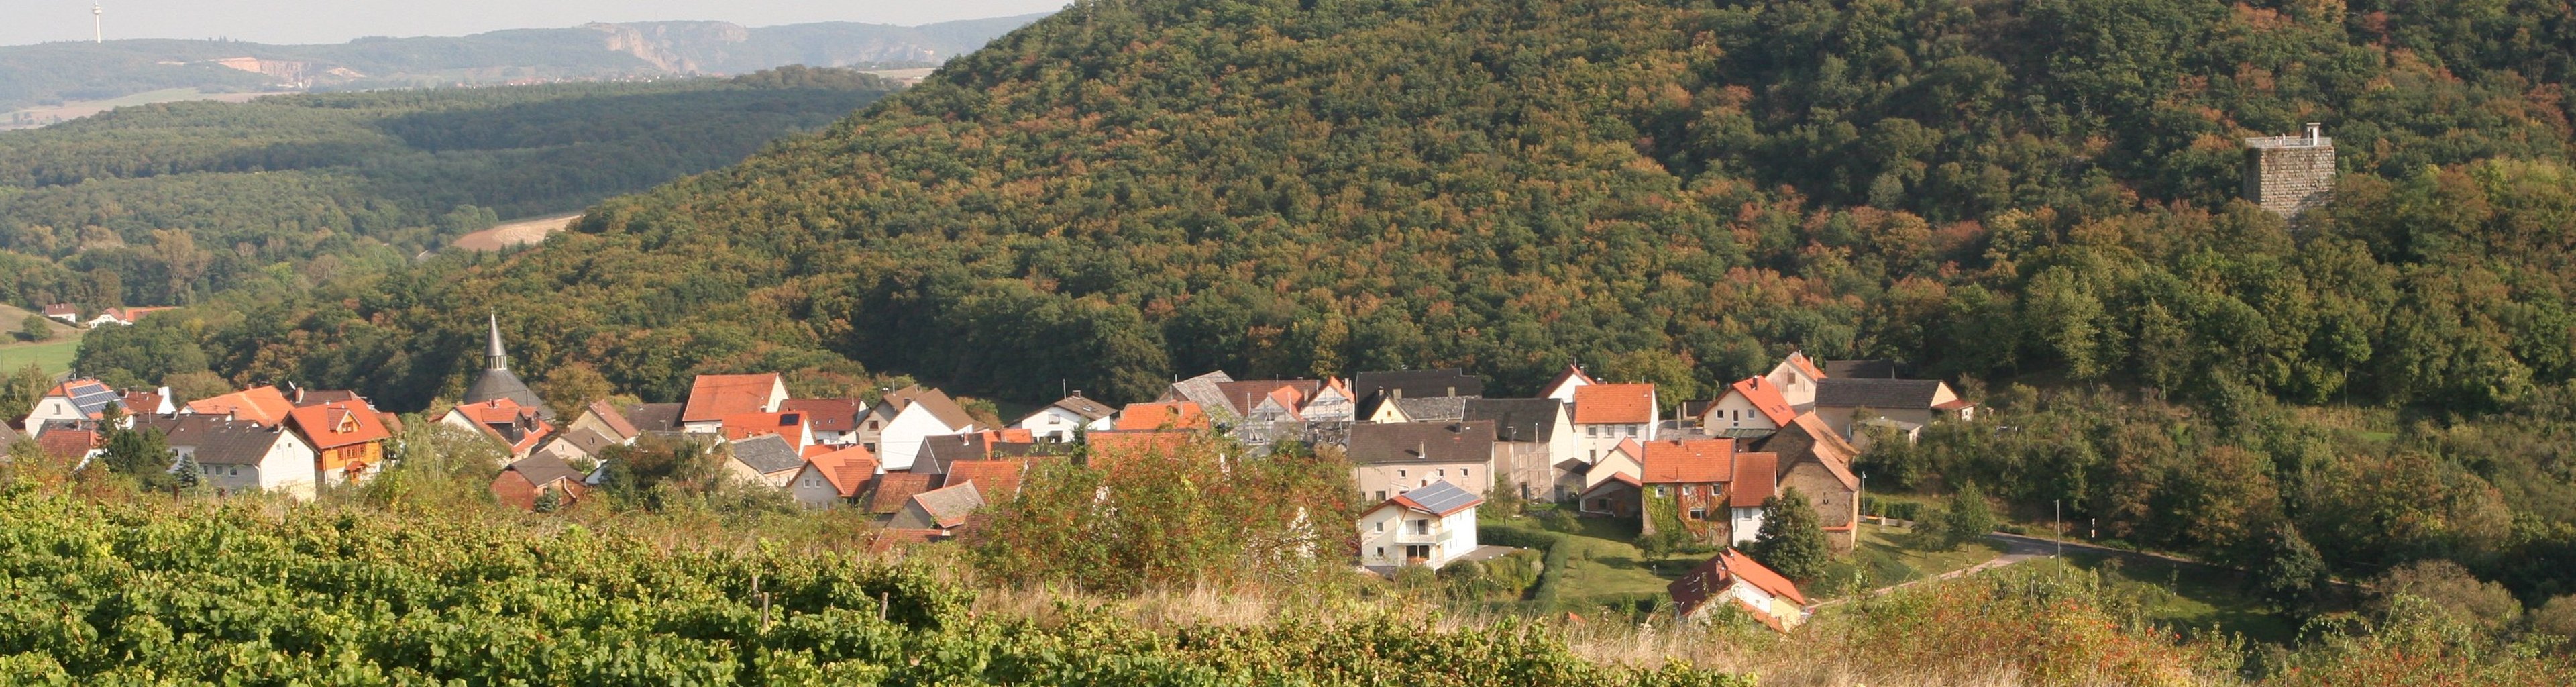 Burgsponheim | Verbandsgemeinde Rüdesheim